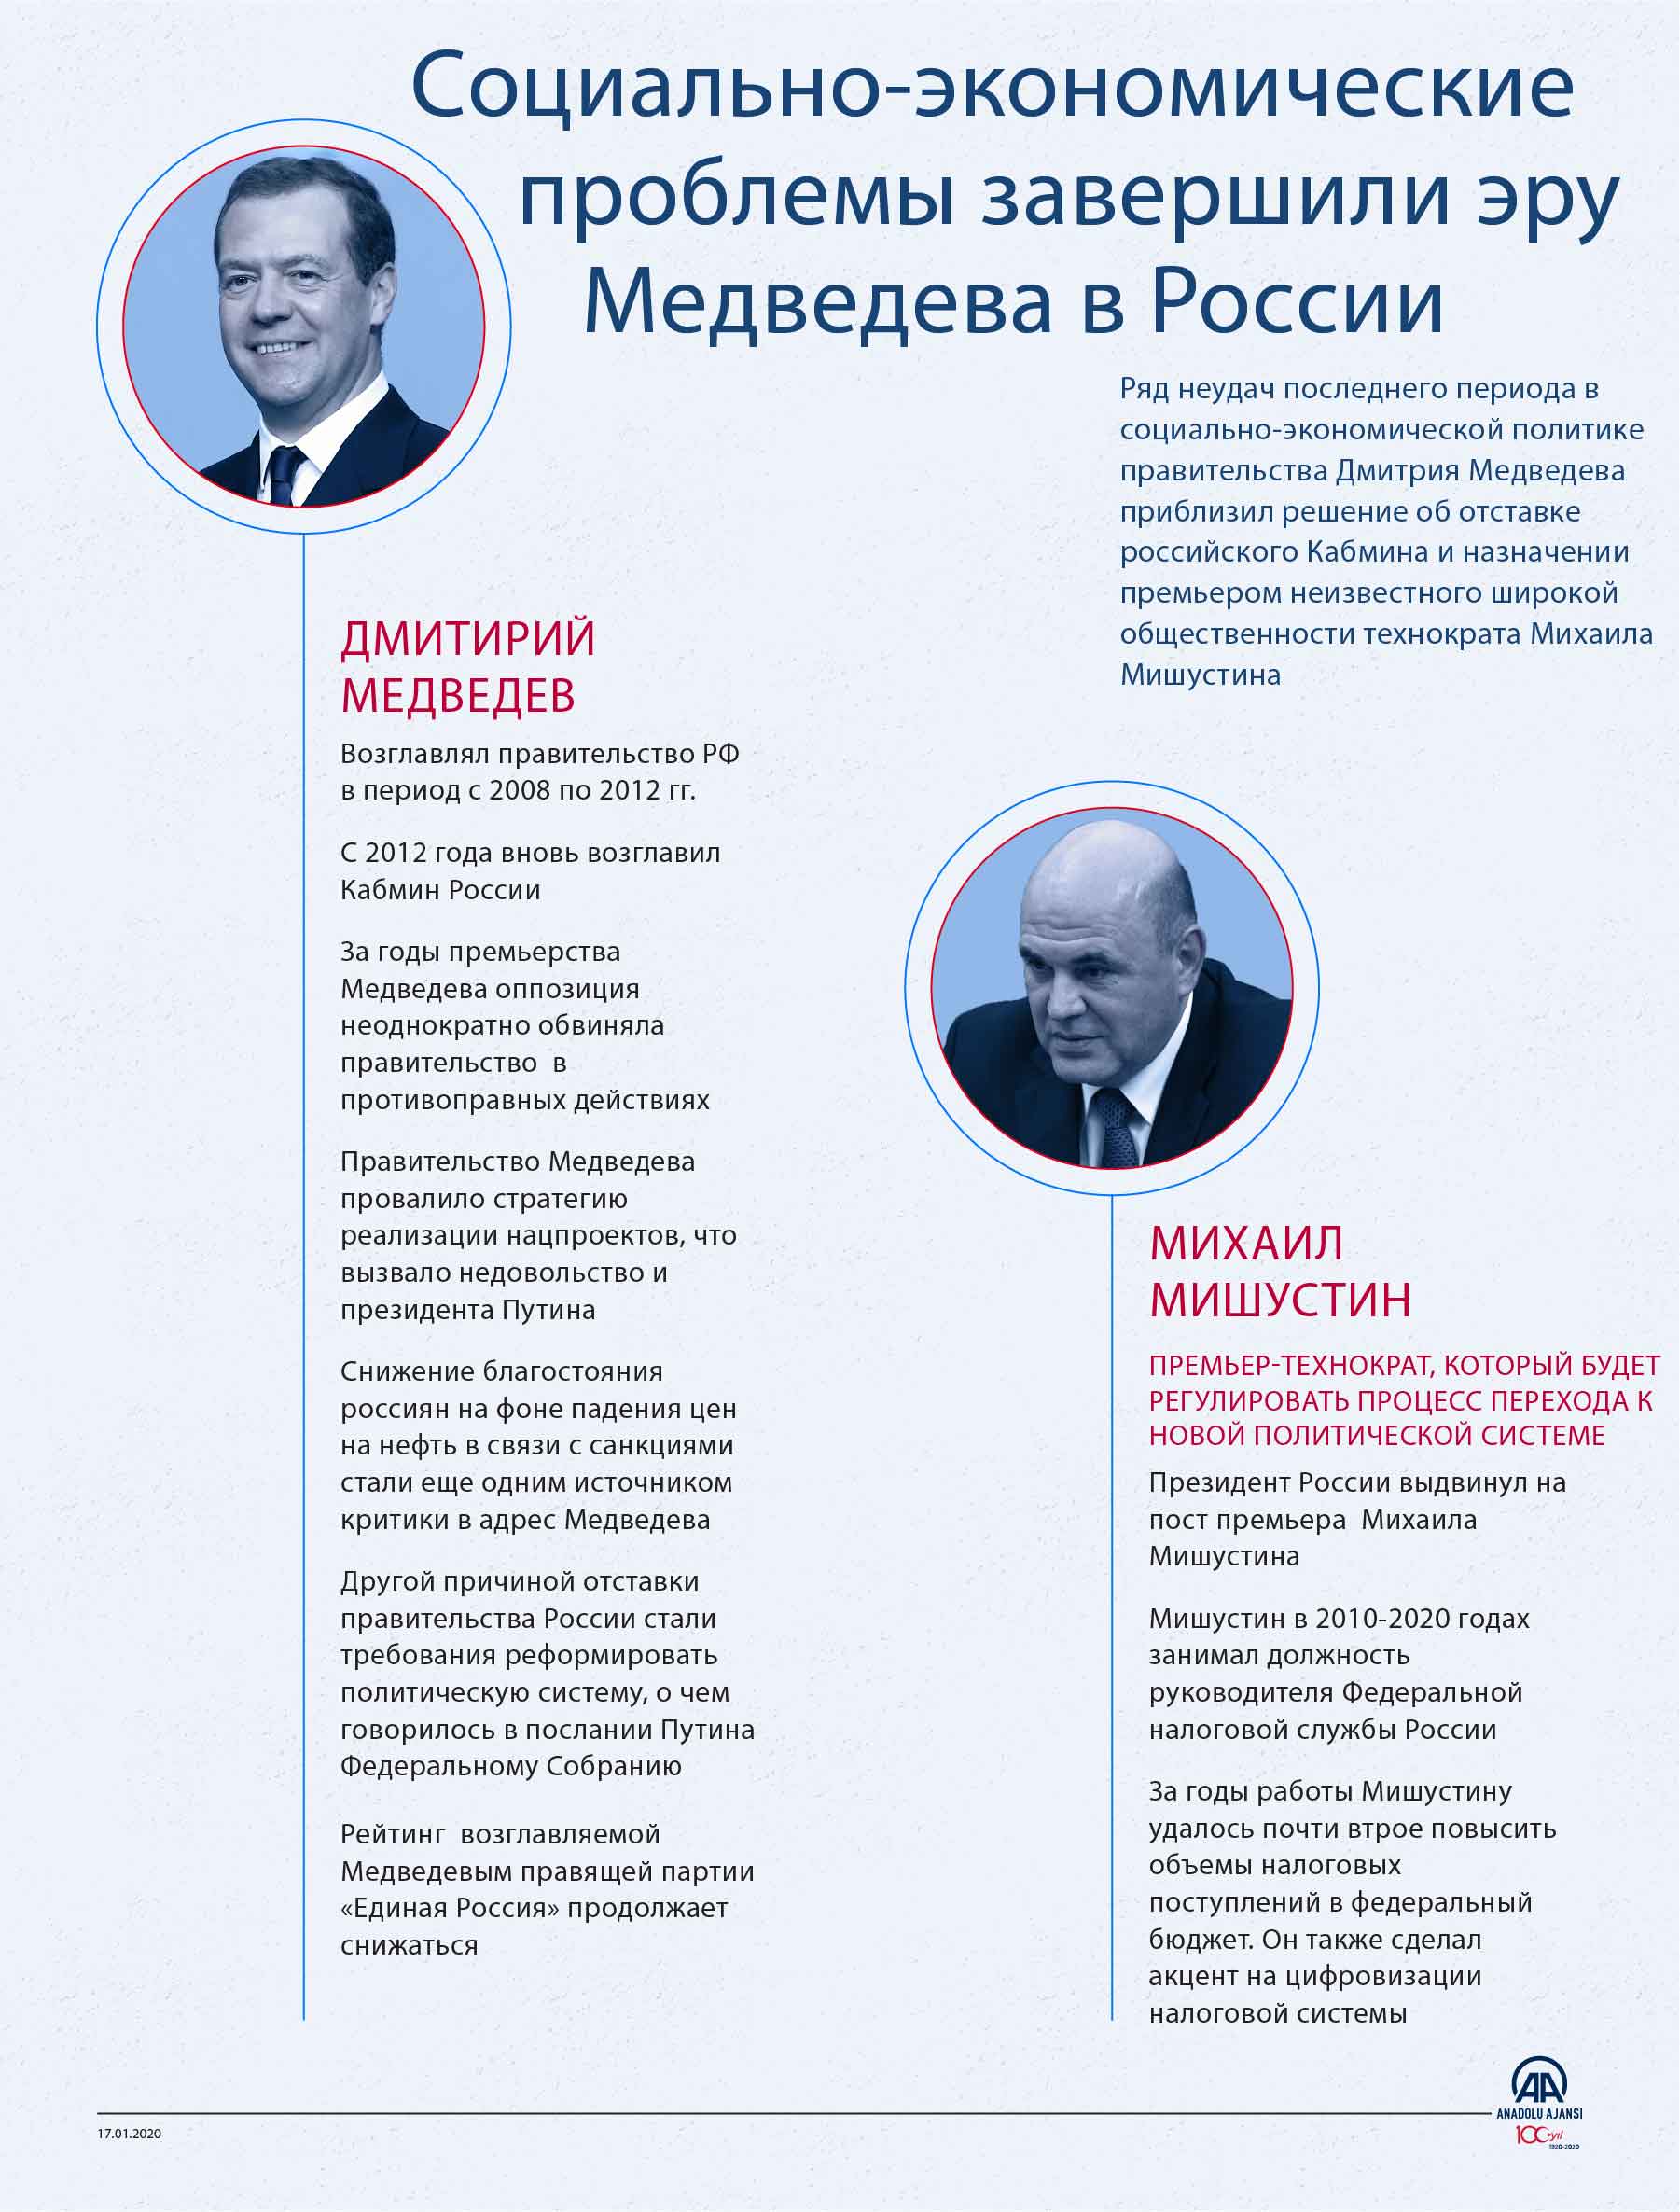 Социально-экономические проблемы в России завершили эру Медведева